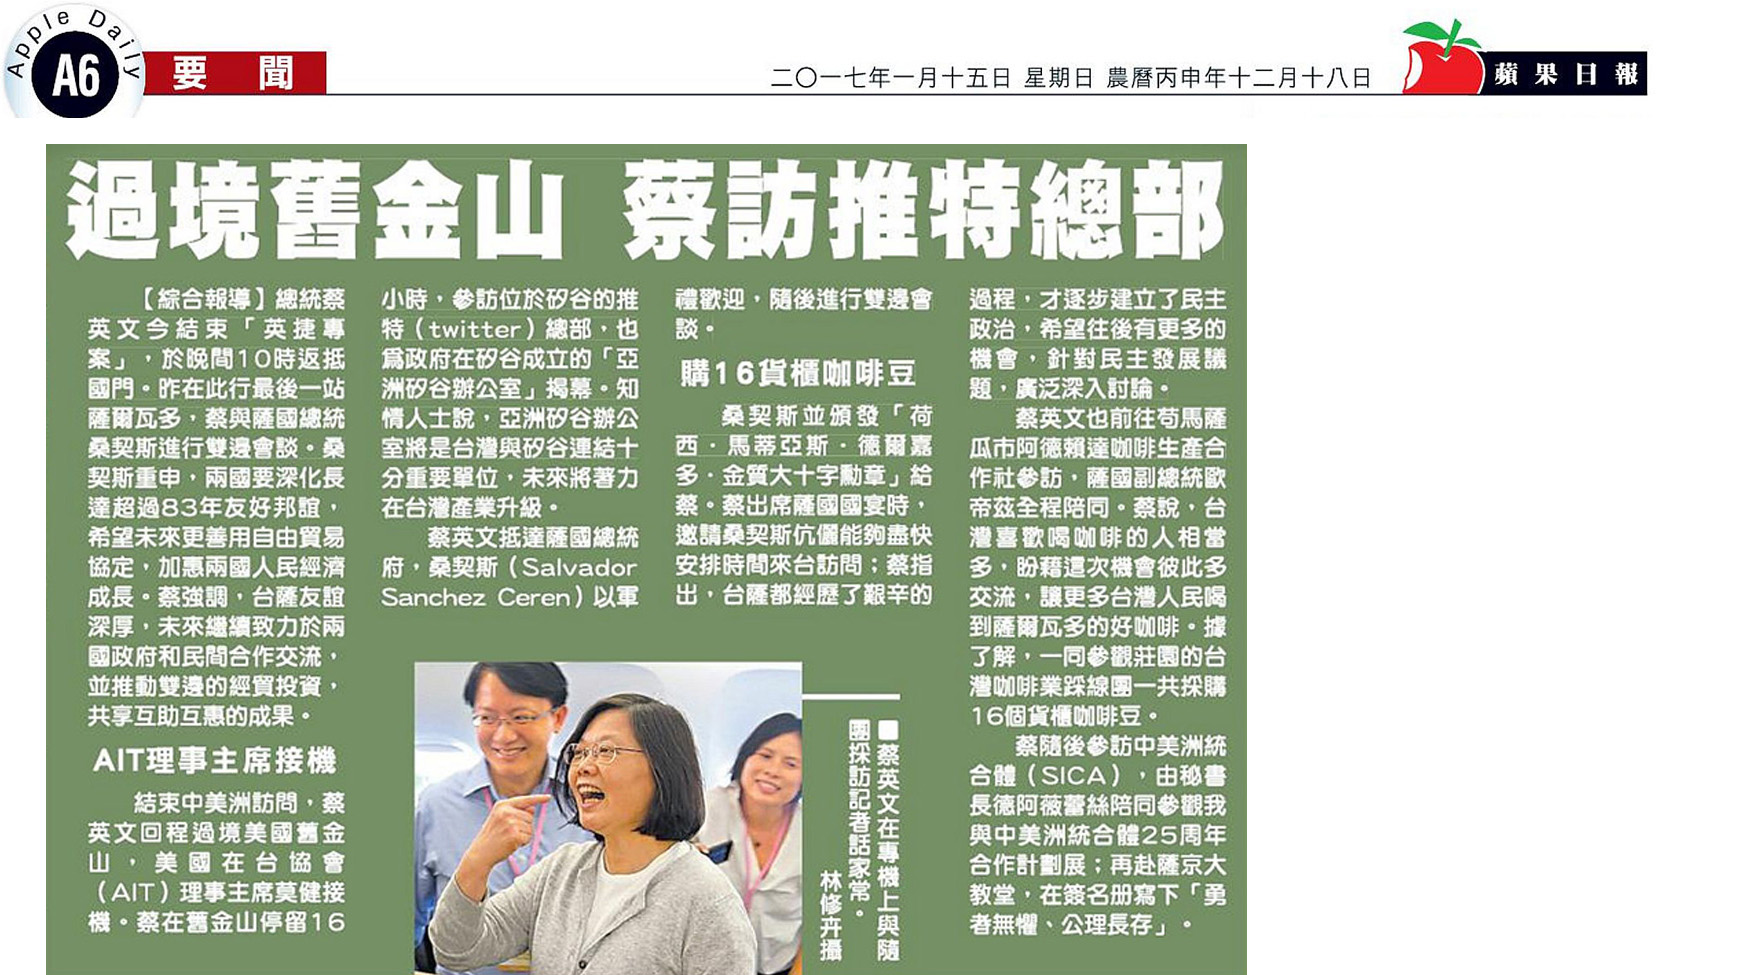 La Presidenta Tsai visita la sede de Twitter durante su escala en San Francisco